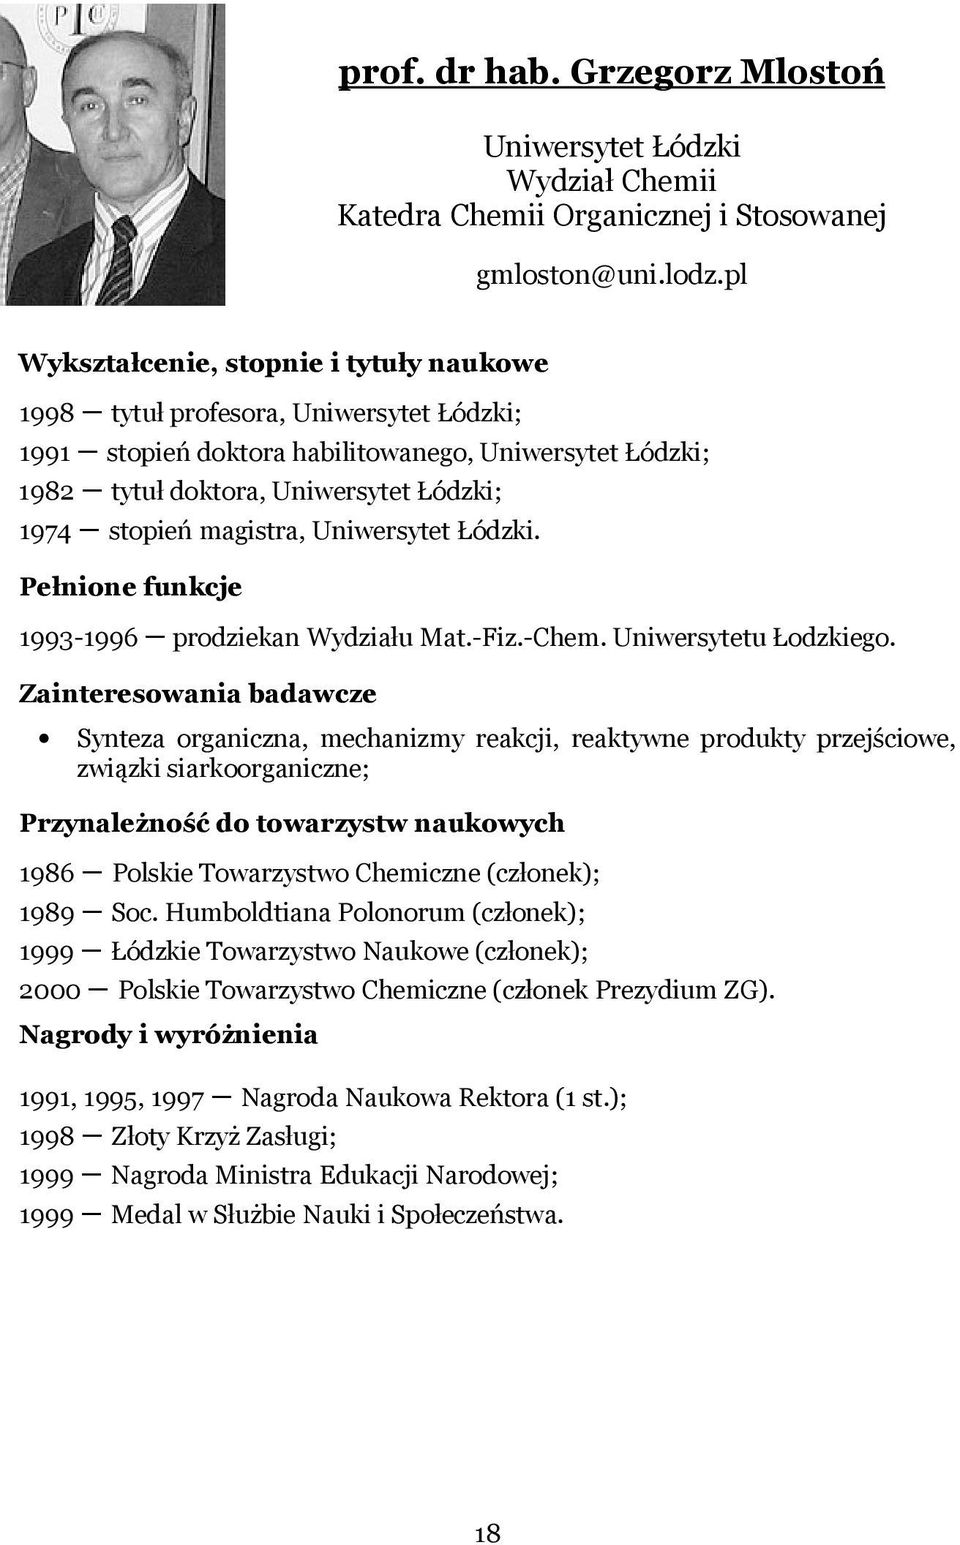 magistra, Uniwersytet Łódzki. Pełnione funkcje 1993-1996 prodziekan Wydziału Mat.-Fiz.-Chem. Uniwersytetu Łodzkiego.